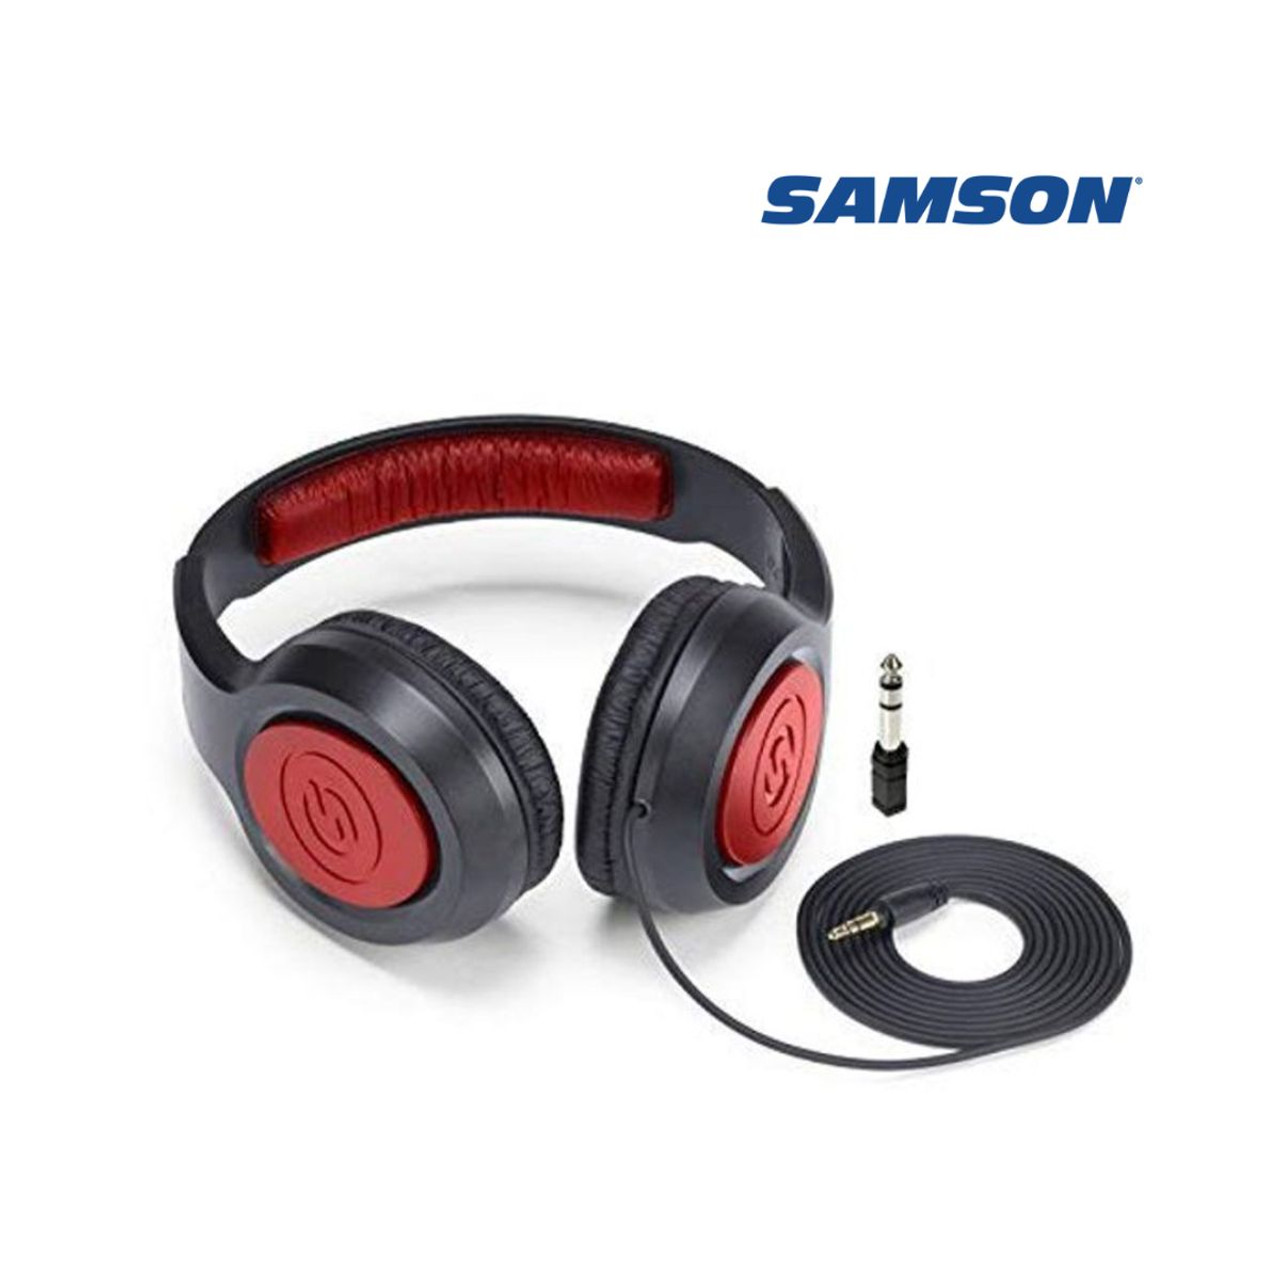 Samson SR360 Dynamic Over-Ear Stereo Headphones product image